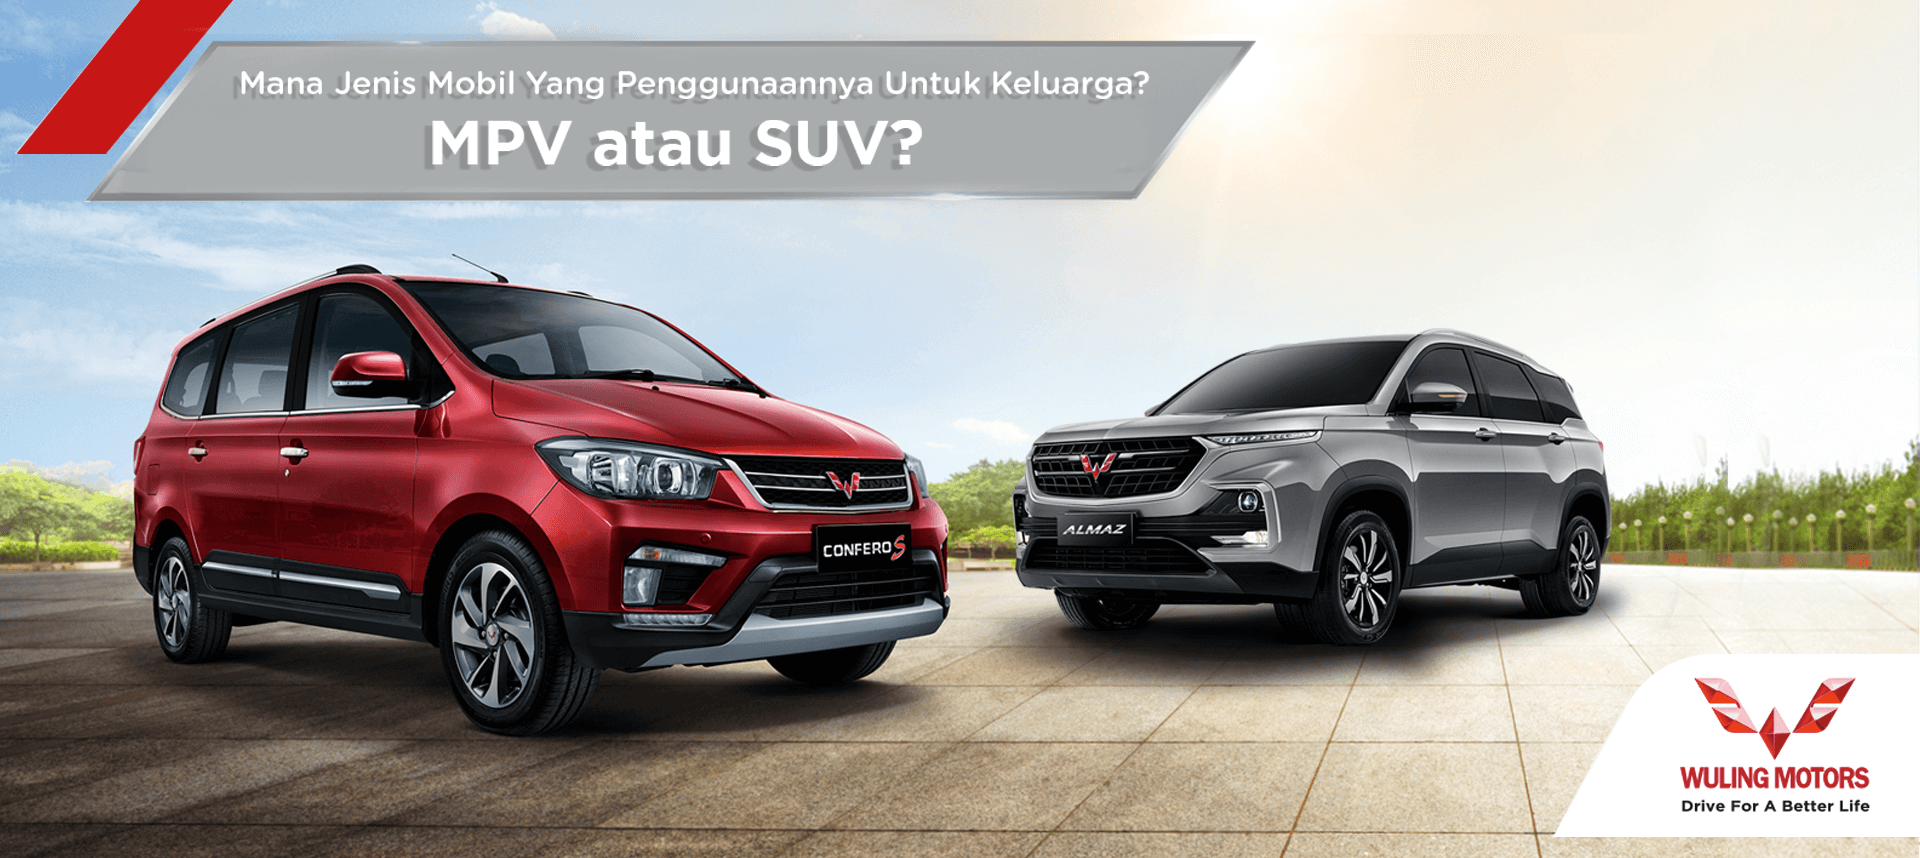 Image 7 Perbedaan Mobil SUV dan MPV, Mana Pilihan Anda?